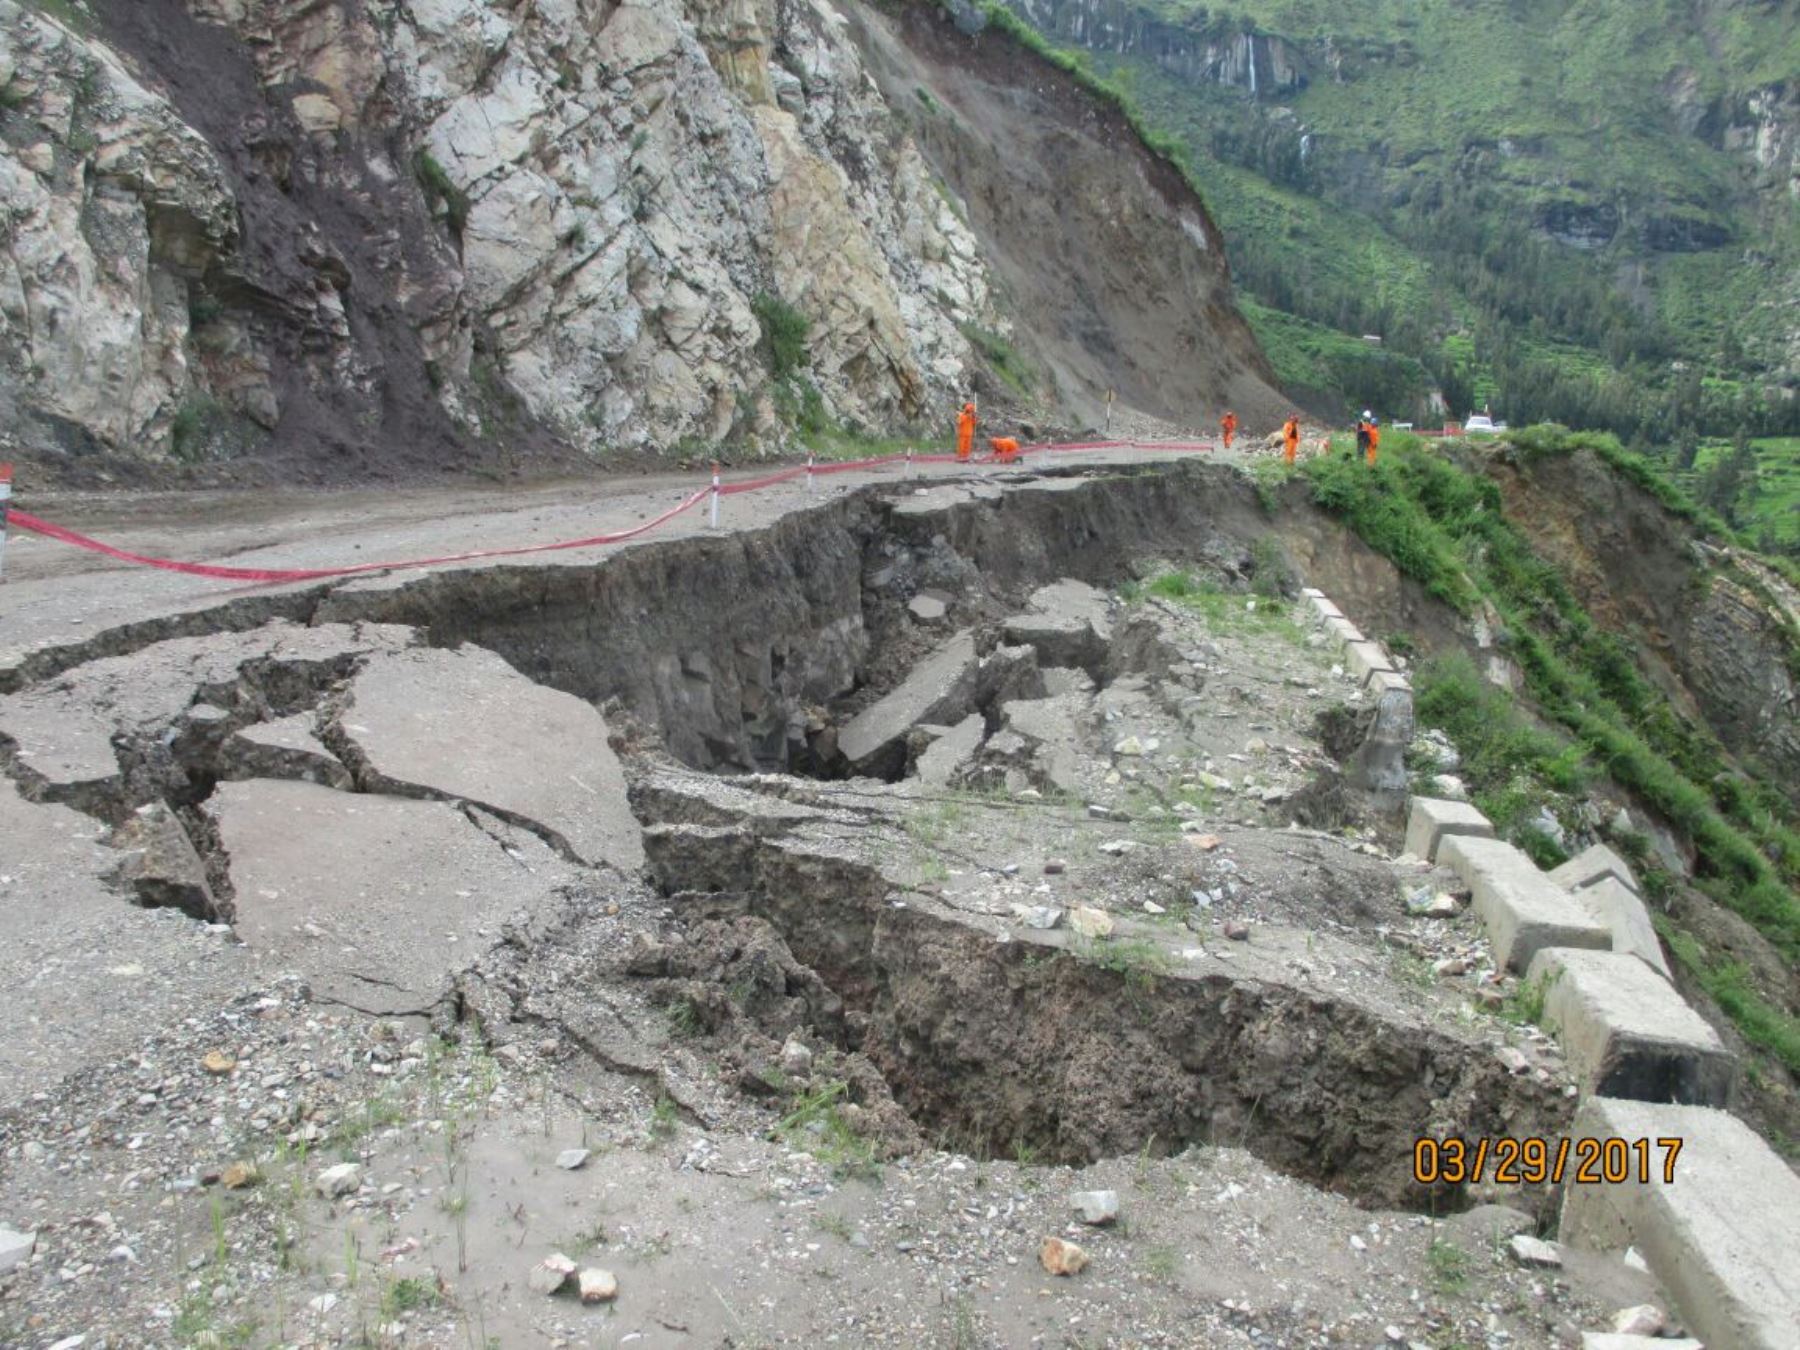 Lluvias y falla geológica provocan el hundimiento de carretera que comunica a provincia de La Unión, en Arequipa. ANDINA